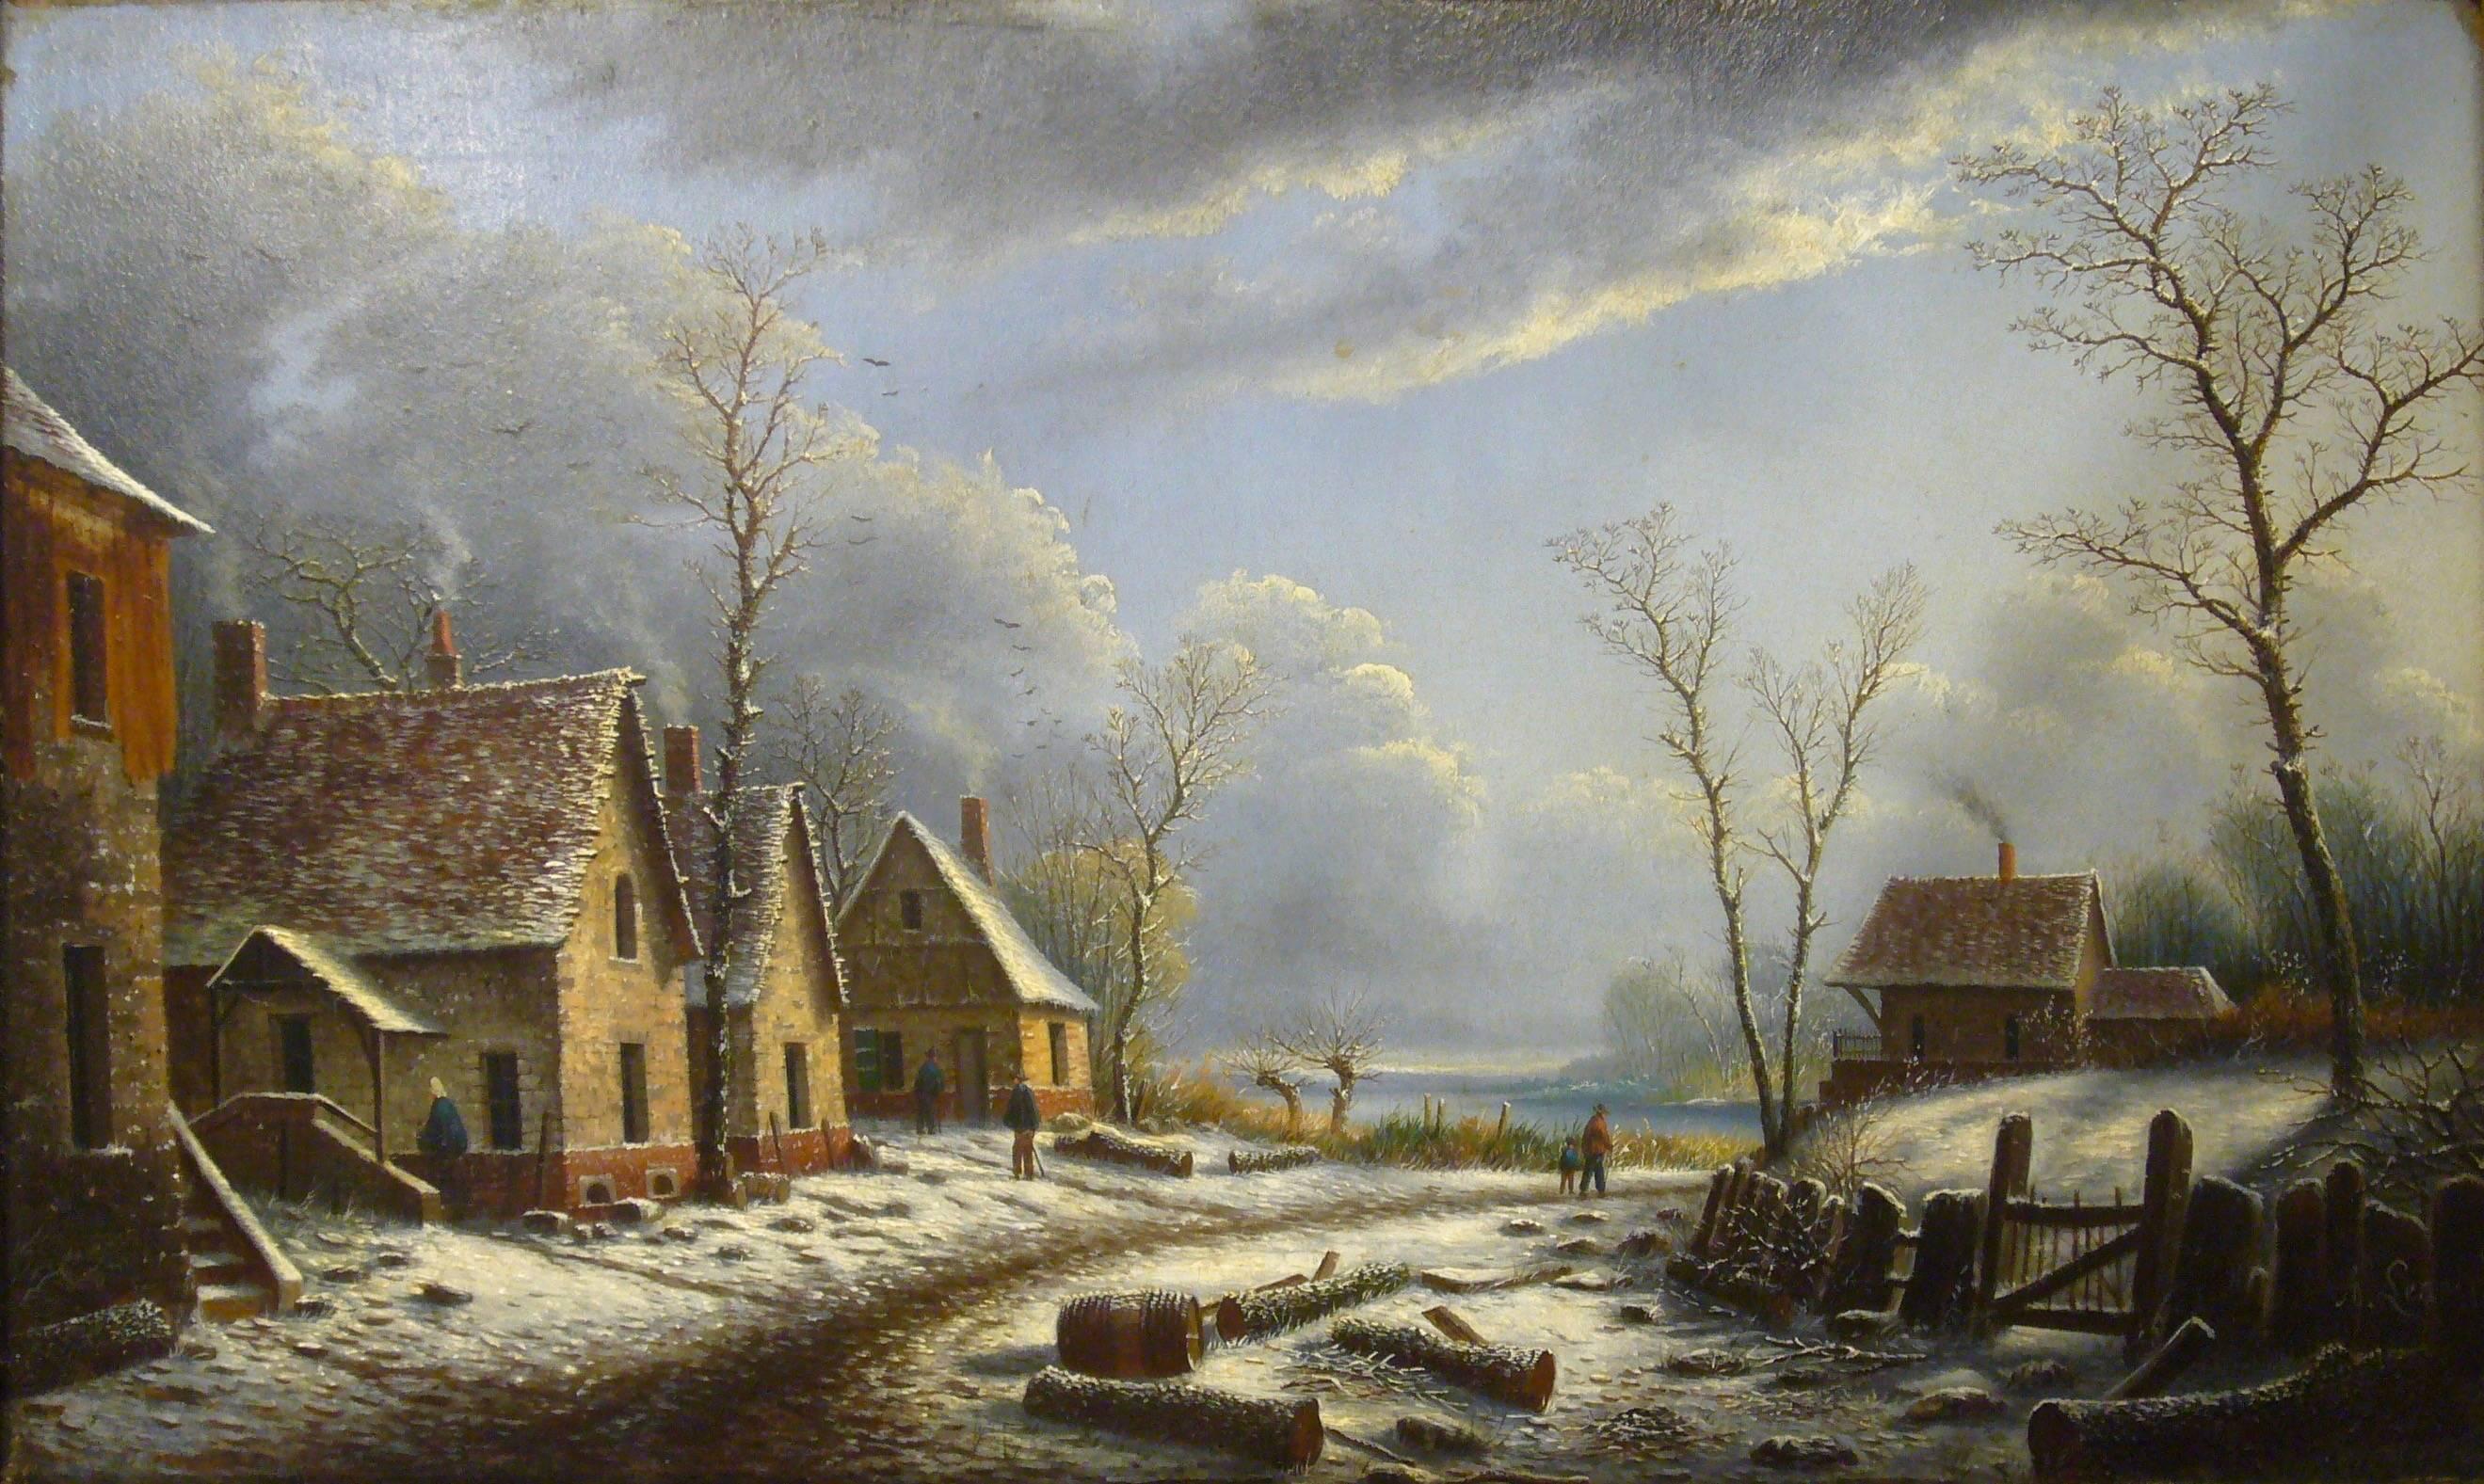 Village paysage enneigé en hiver - (Village Landscape in Winter) - Painting by Albert Alexandre Lenoir